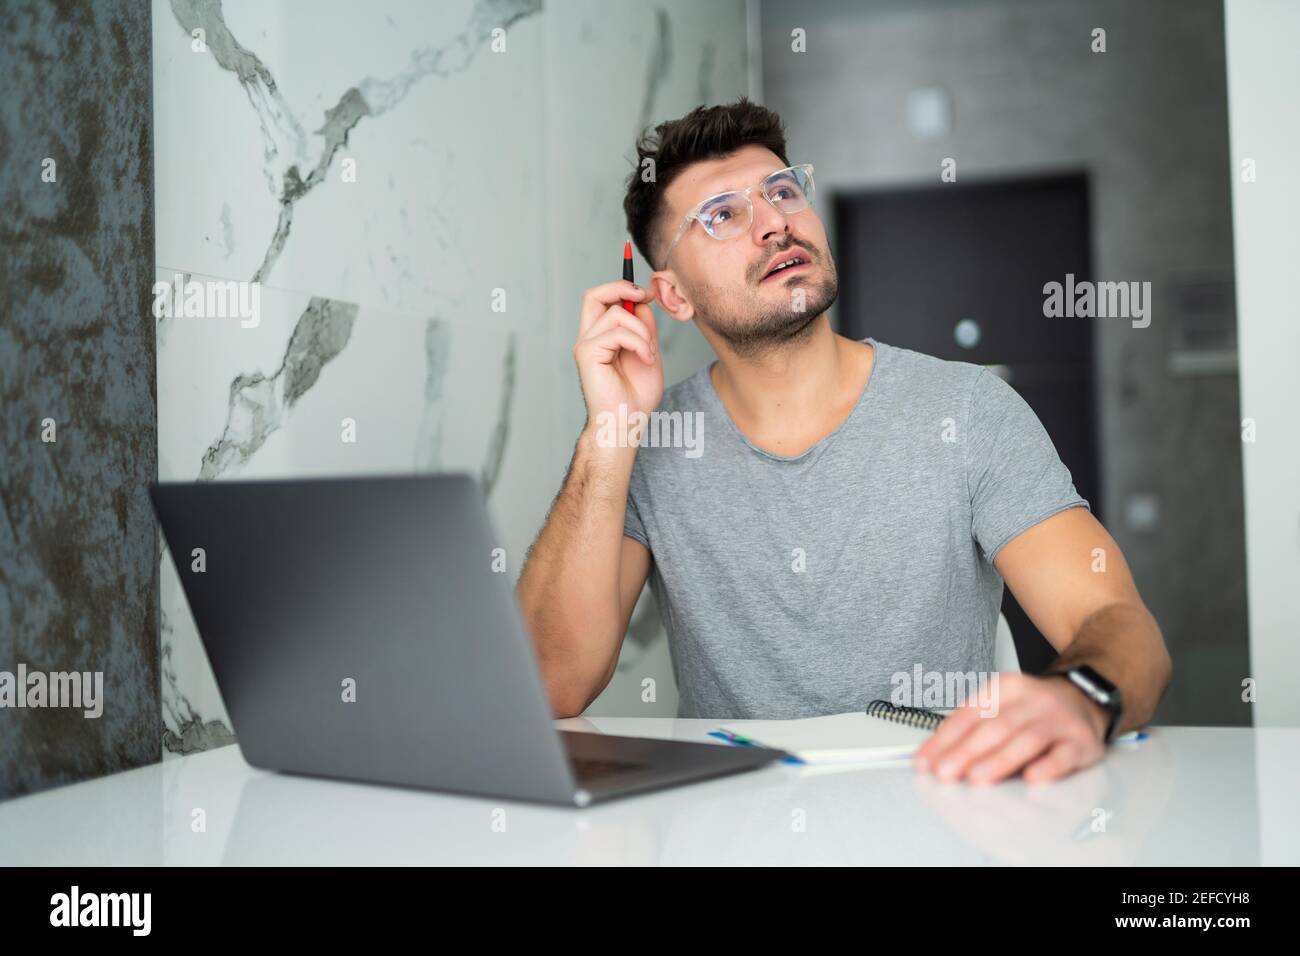 Uomo serio che indossa gli occhiali calcolando le fatture o le tasse domestiche, le spese della famiglia, usando il laptop e la calcolatrice nella cucina moderna Foto Stock